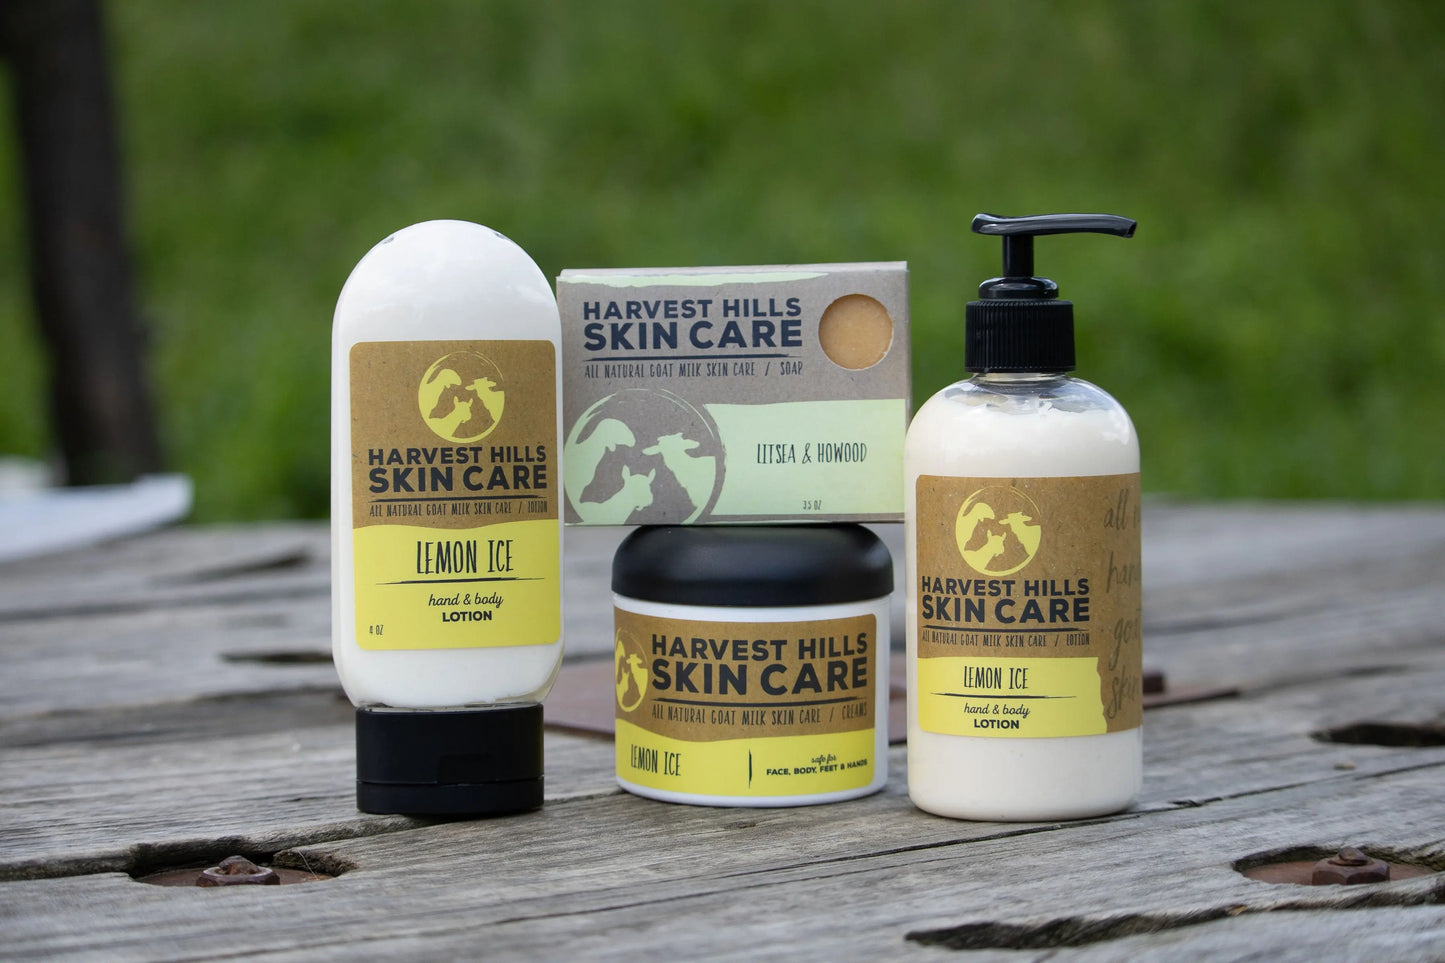 Litsea & HoWood Soap Harvest Hills Skin Care All Natural Goat Milk Skin Care